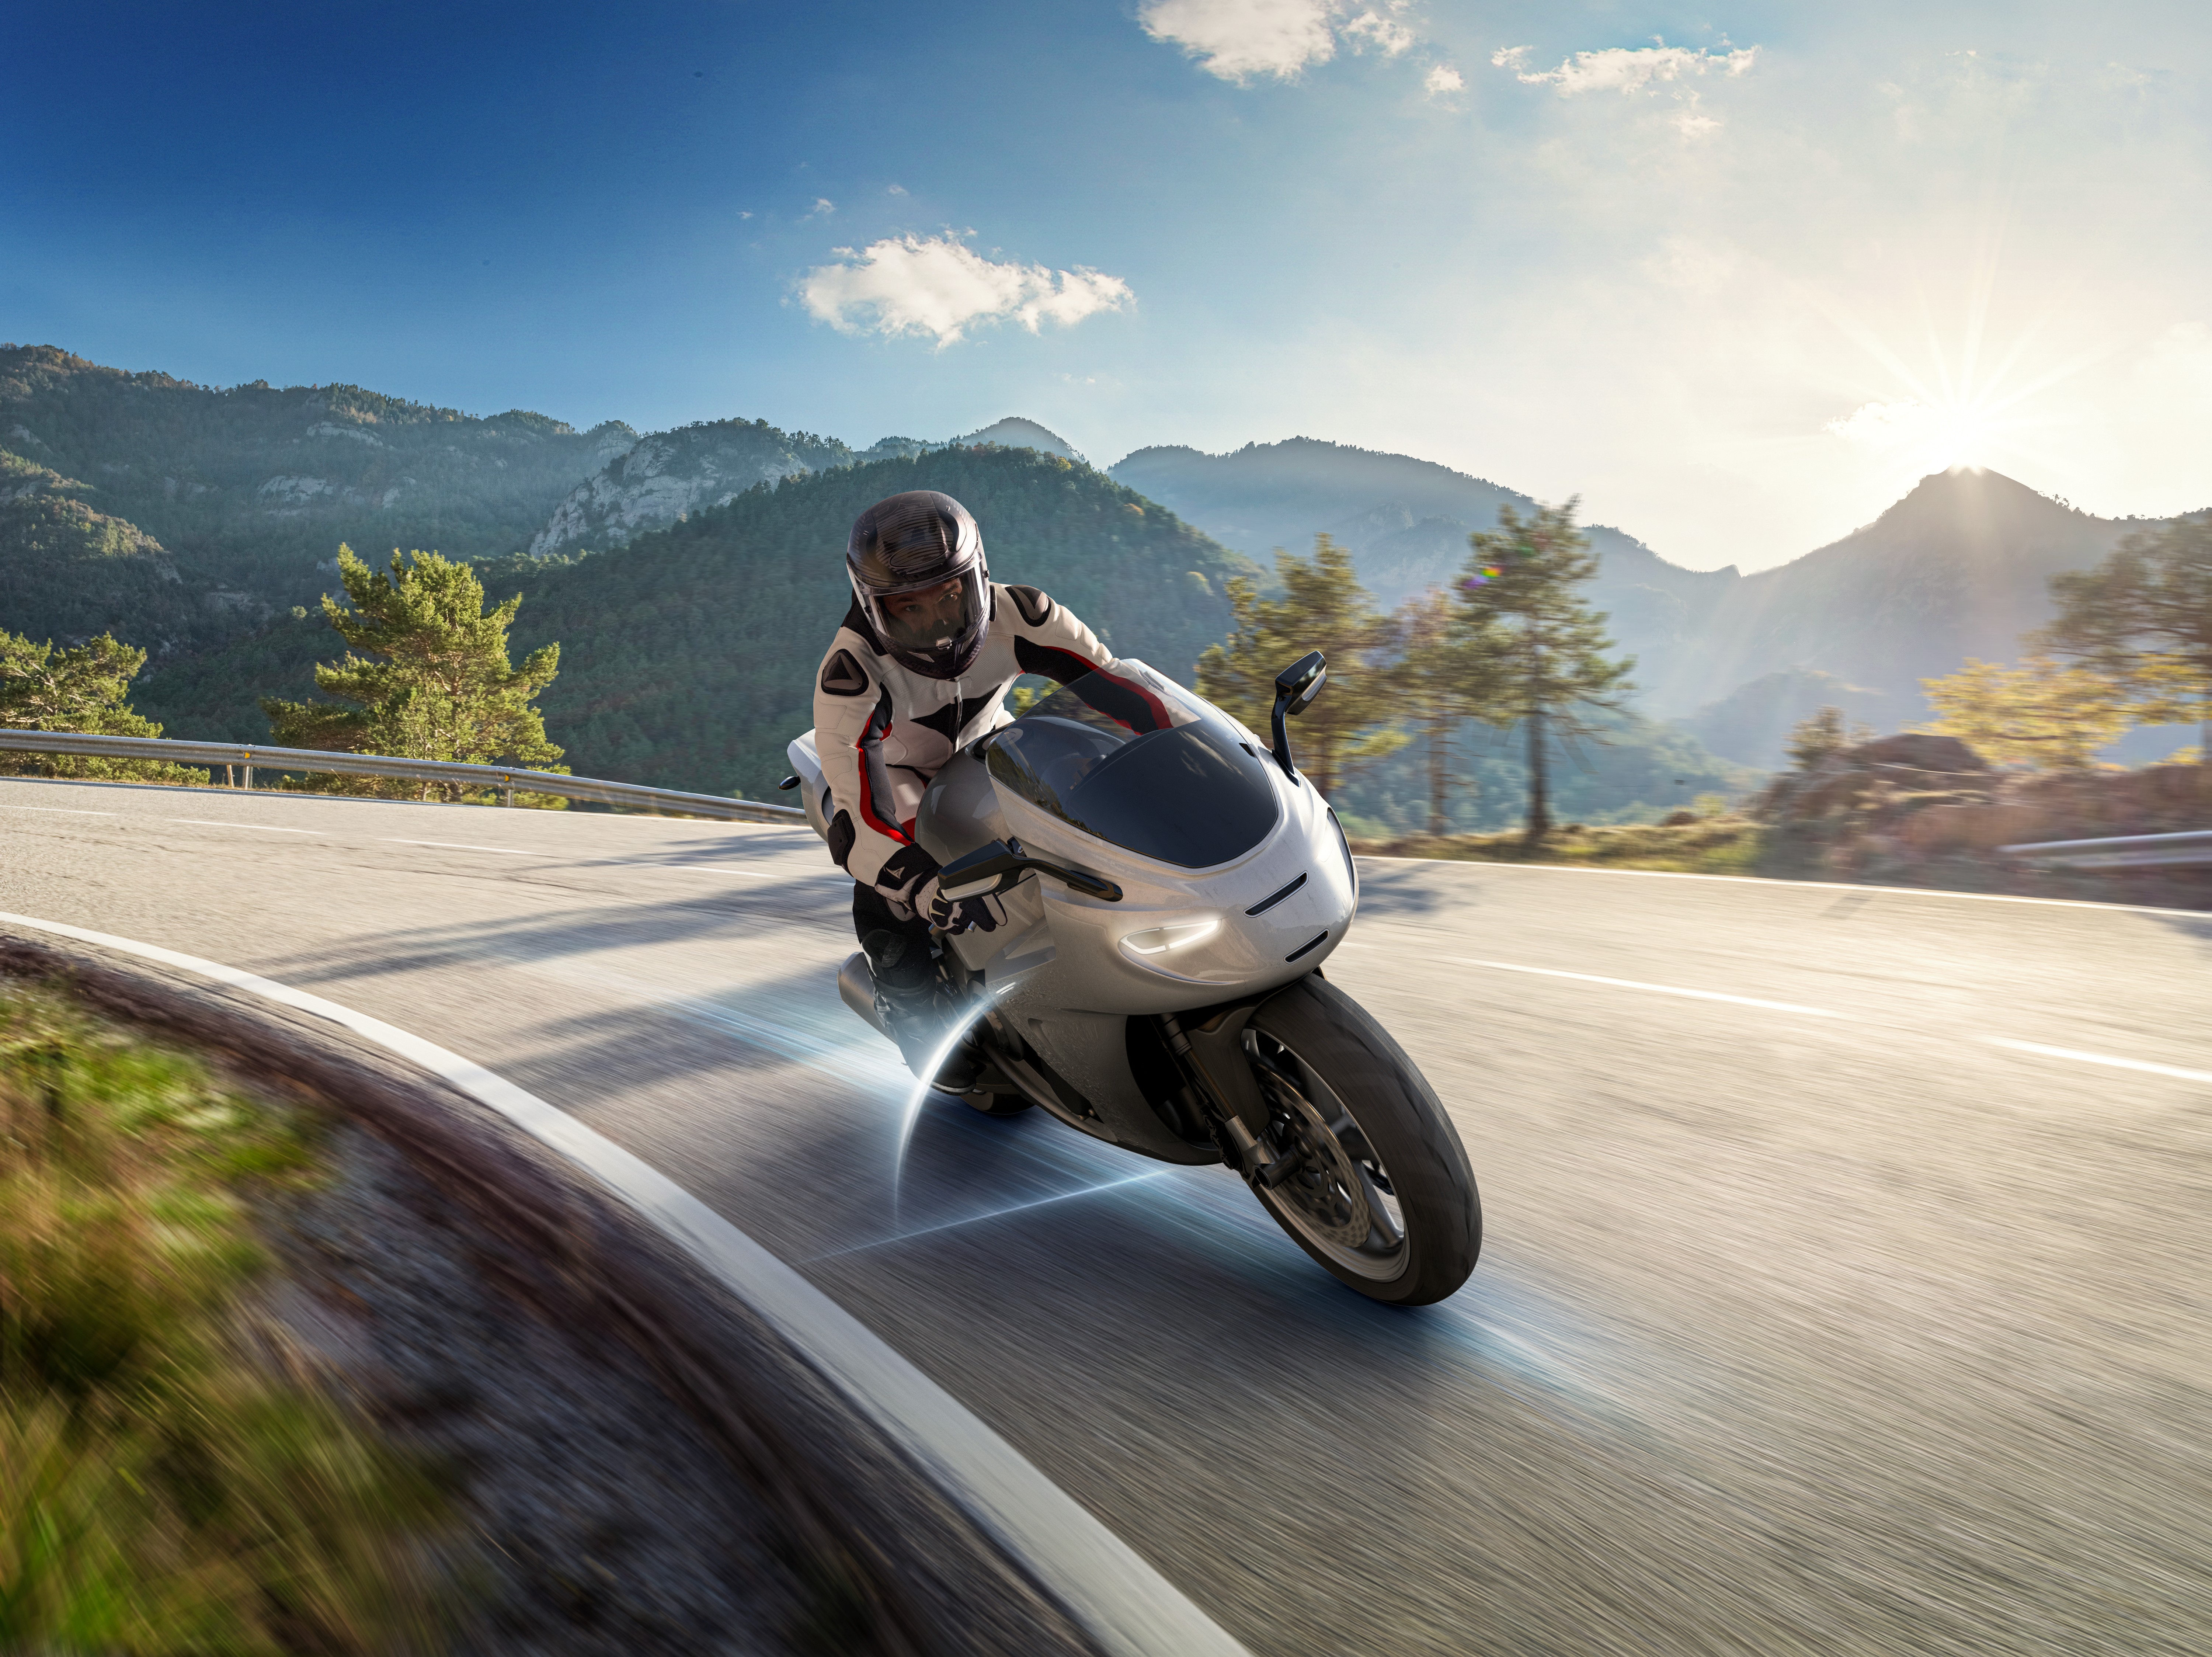 Sicurezza per tutti i segmenti: il Motorcycle Stability Control di Bosch ora è disponibile per i modelli sotto i 400 cc